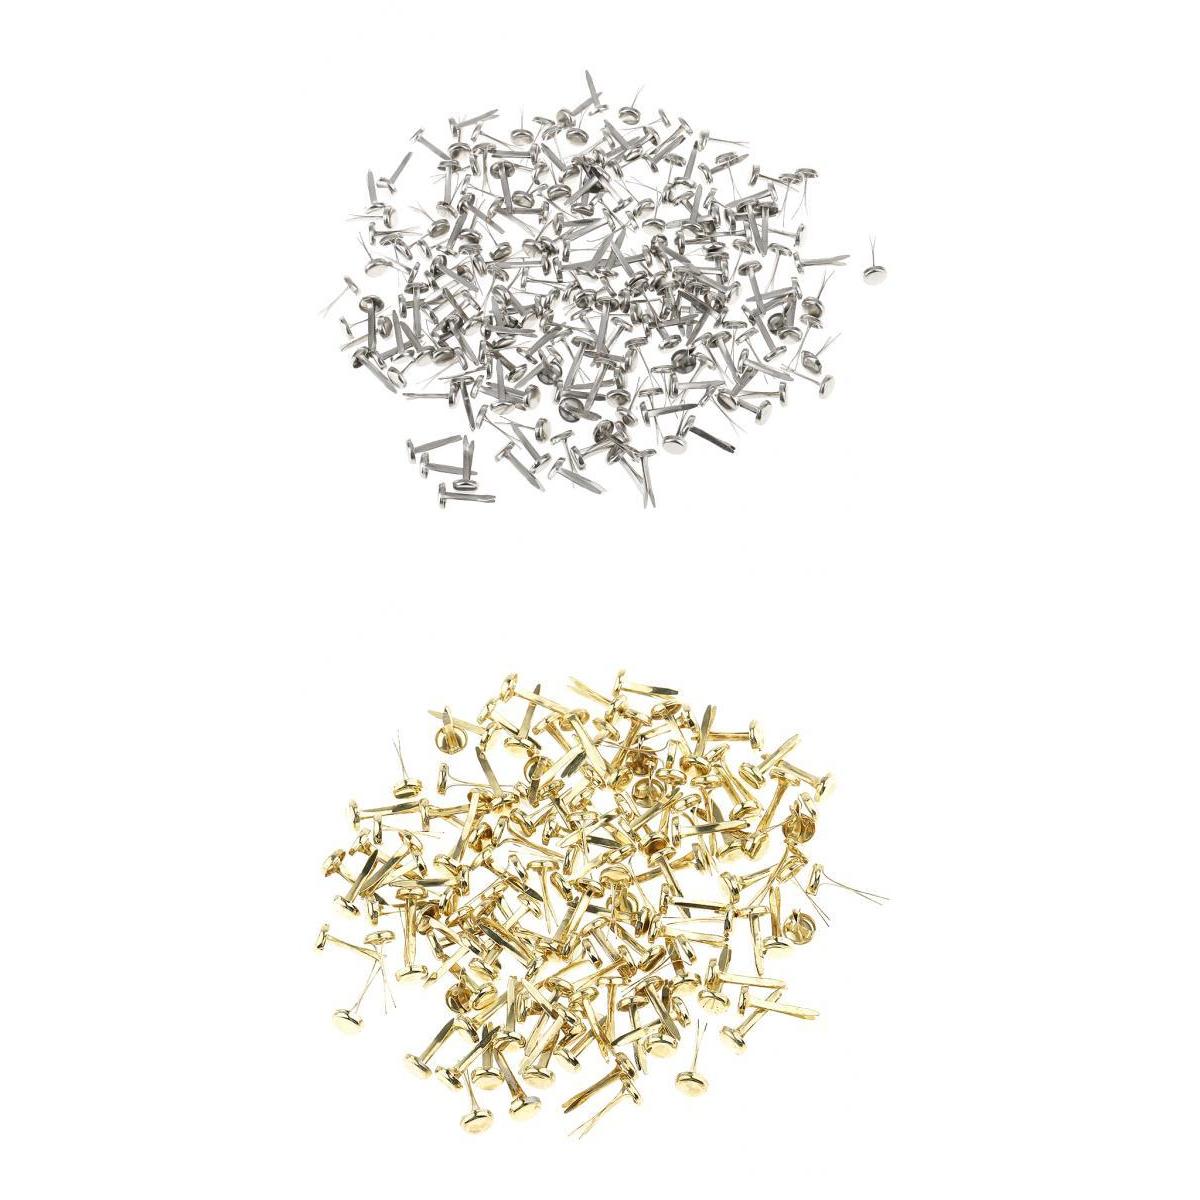 400 Stuks Metalen Ijzer Brads Paper Fasteners Voor Scrapbooking Craft Goud Zilver